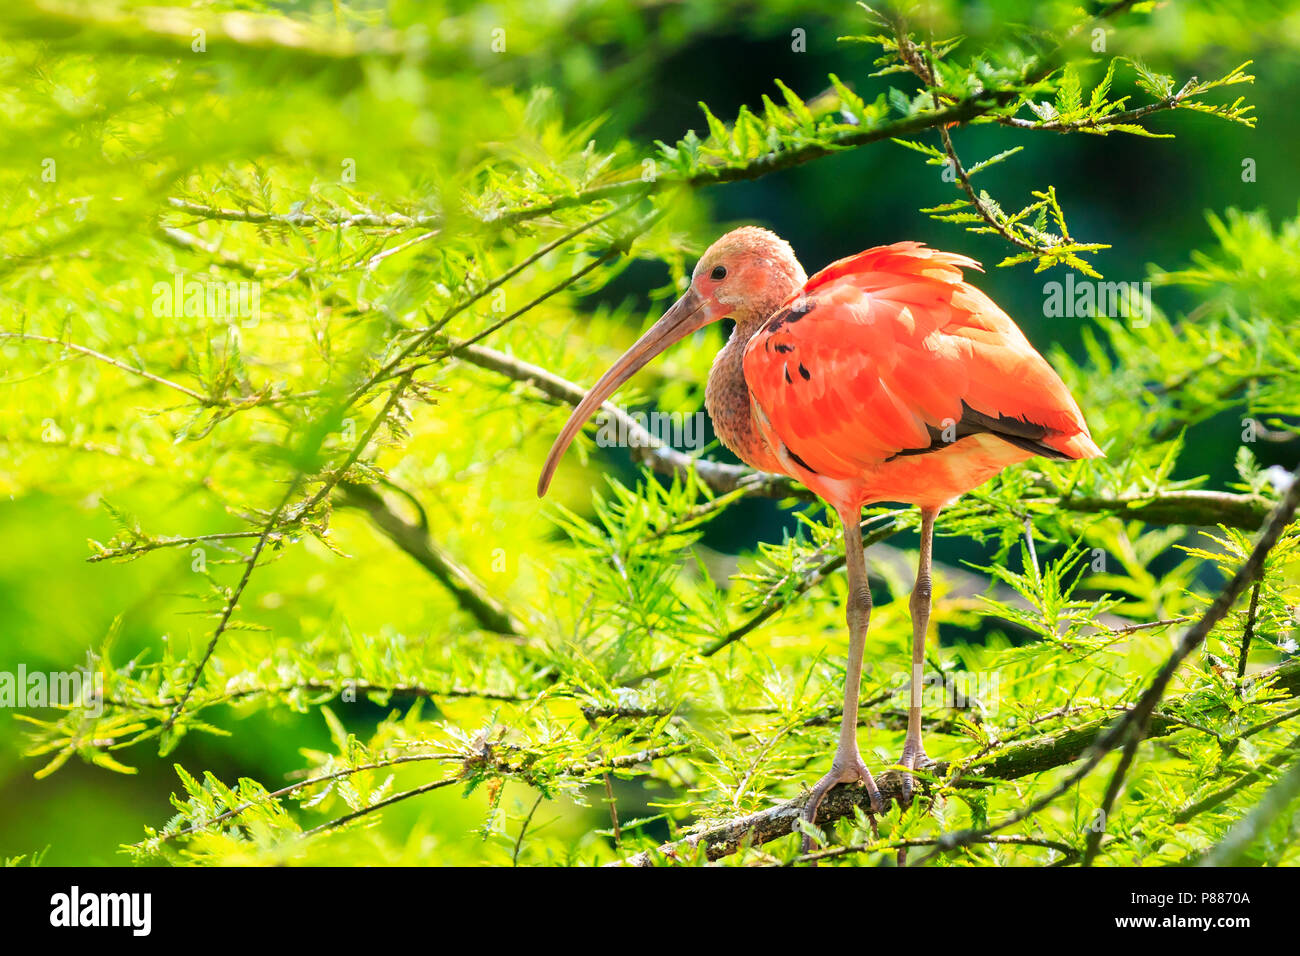 Ibis rouge (Eudocimus ruber) d'oiseaux perchés dans un arbre, à se lisser et sécher ses ailes au soleil. C'est l'un des deux oiseaux nationale de Trinité-et T Banque D'Images